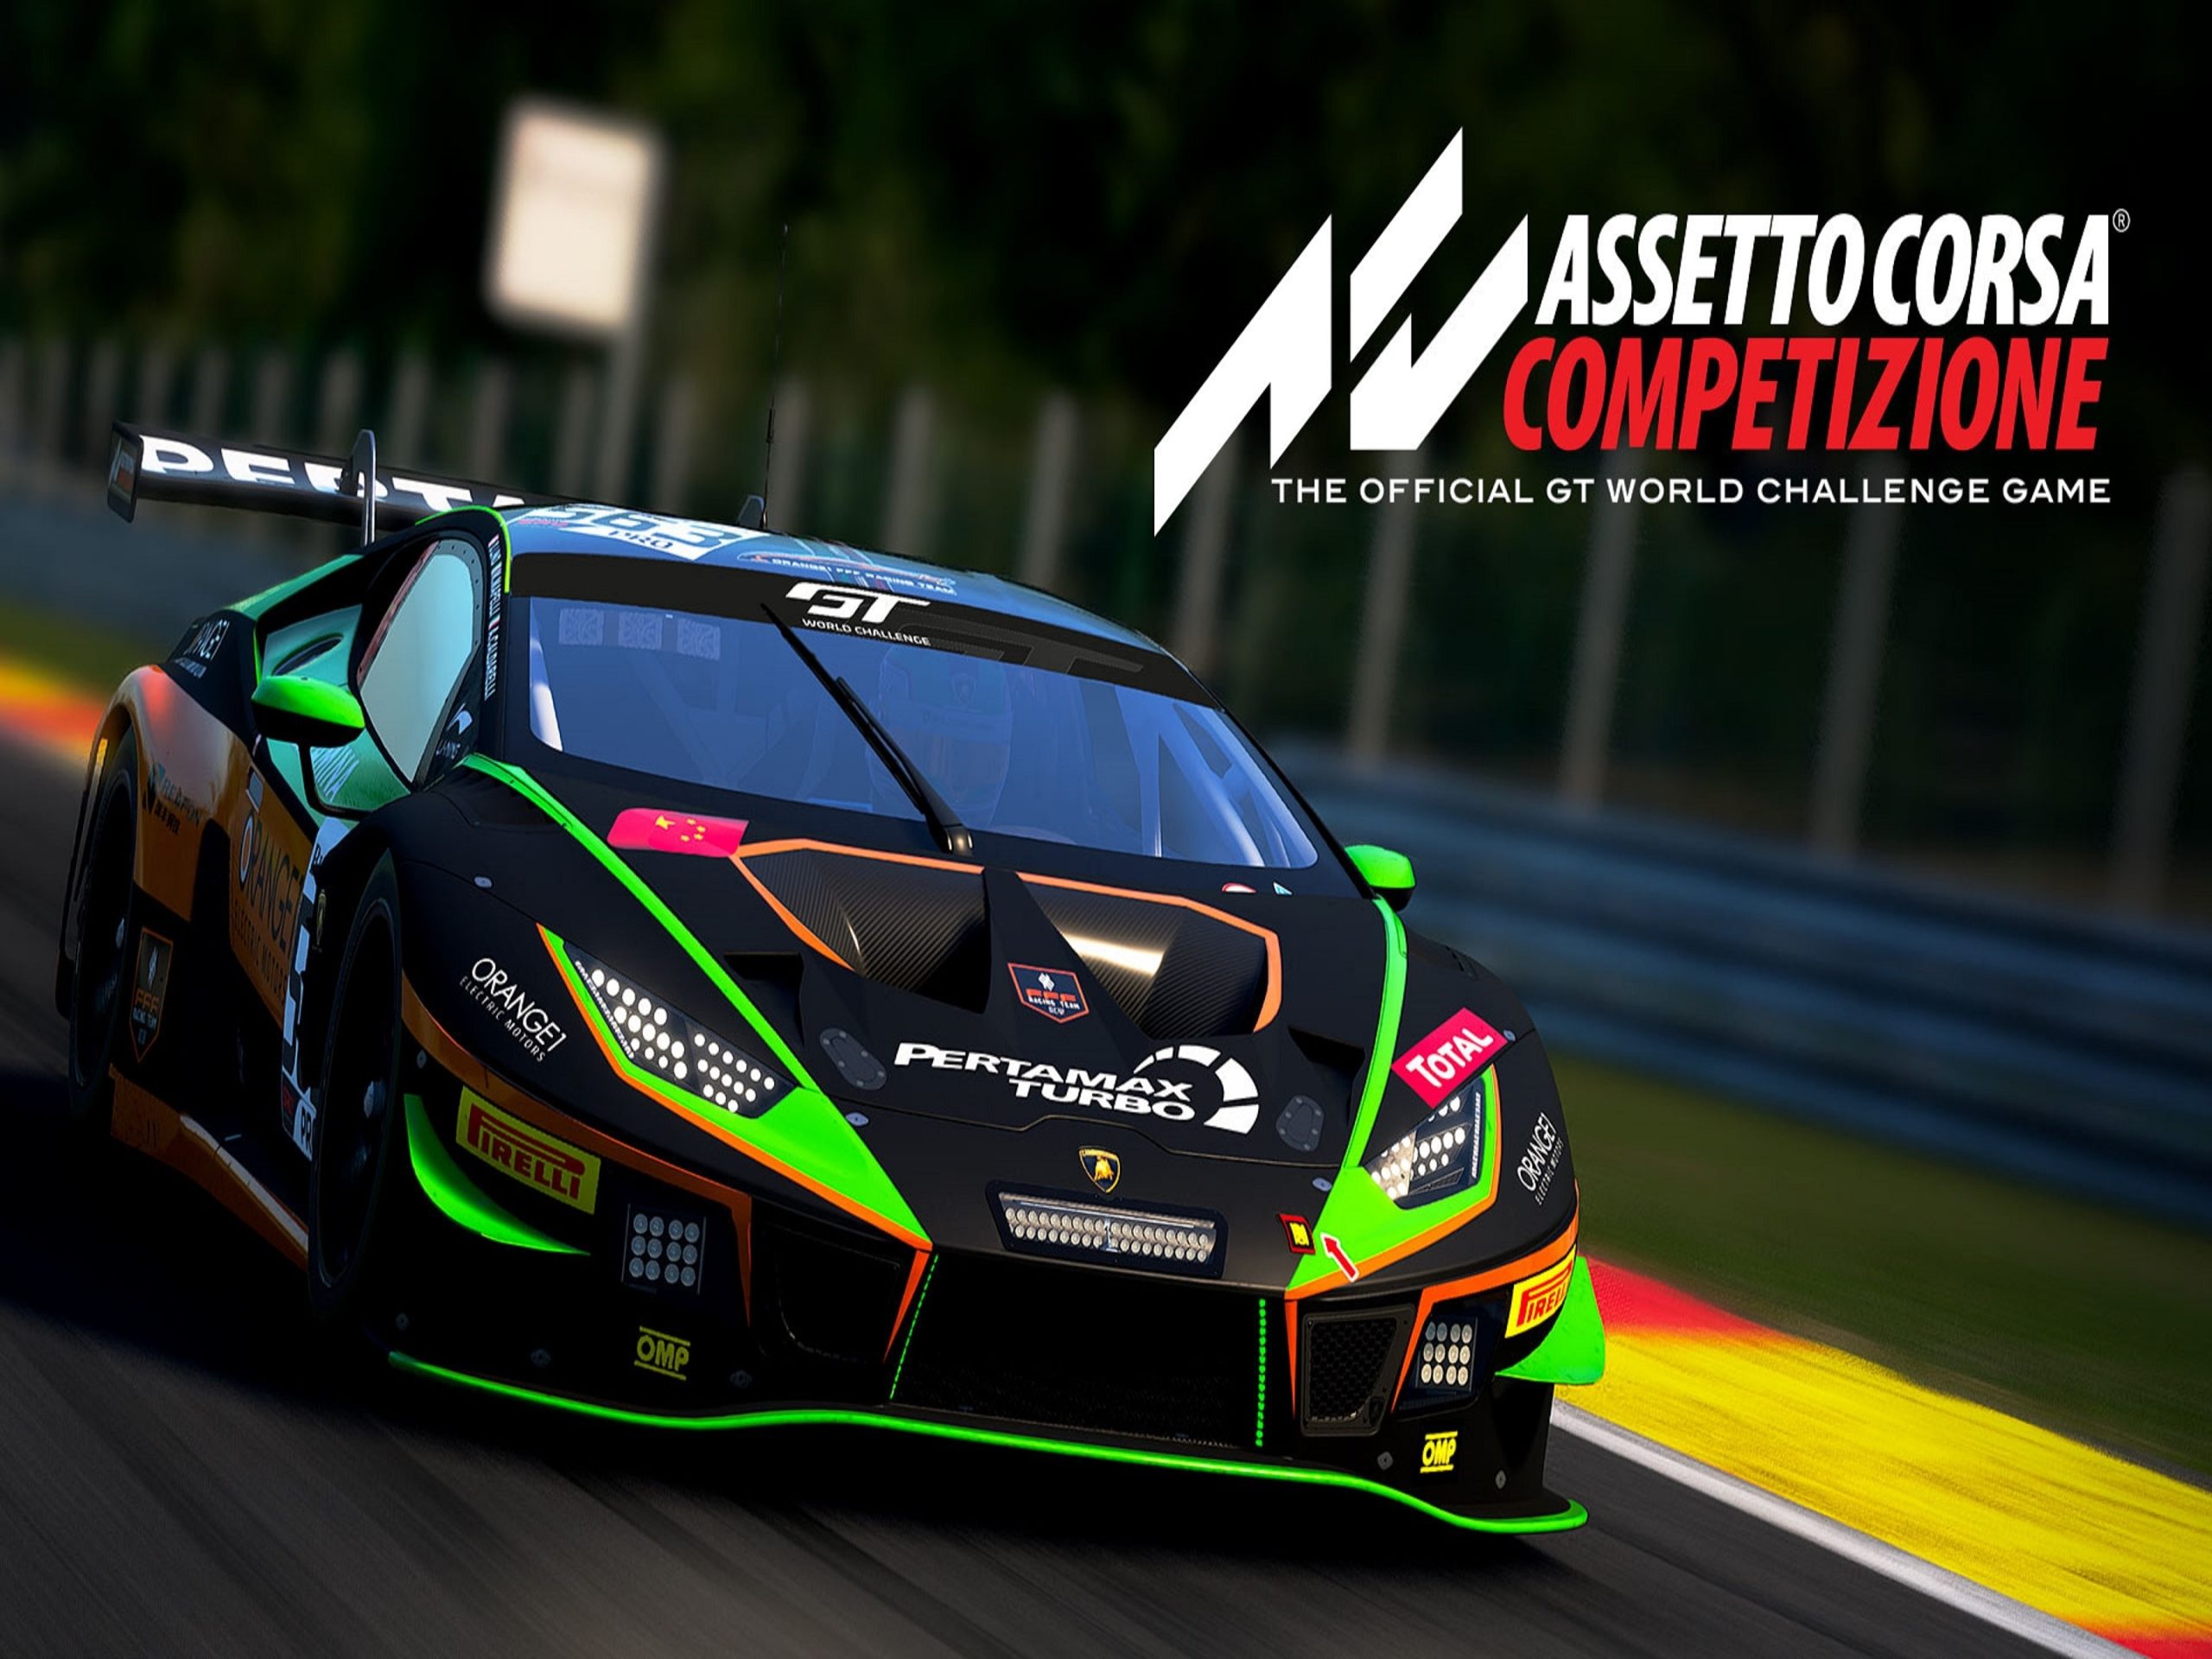 Assetto Corsa Competizione - Exclusive PS5 Gameplay Trailer - Gameranx